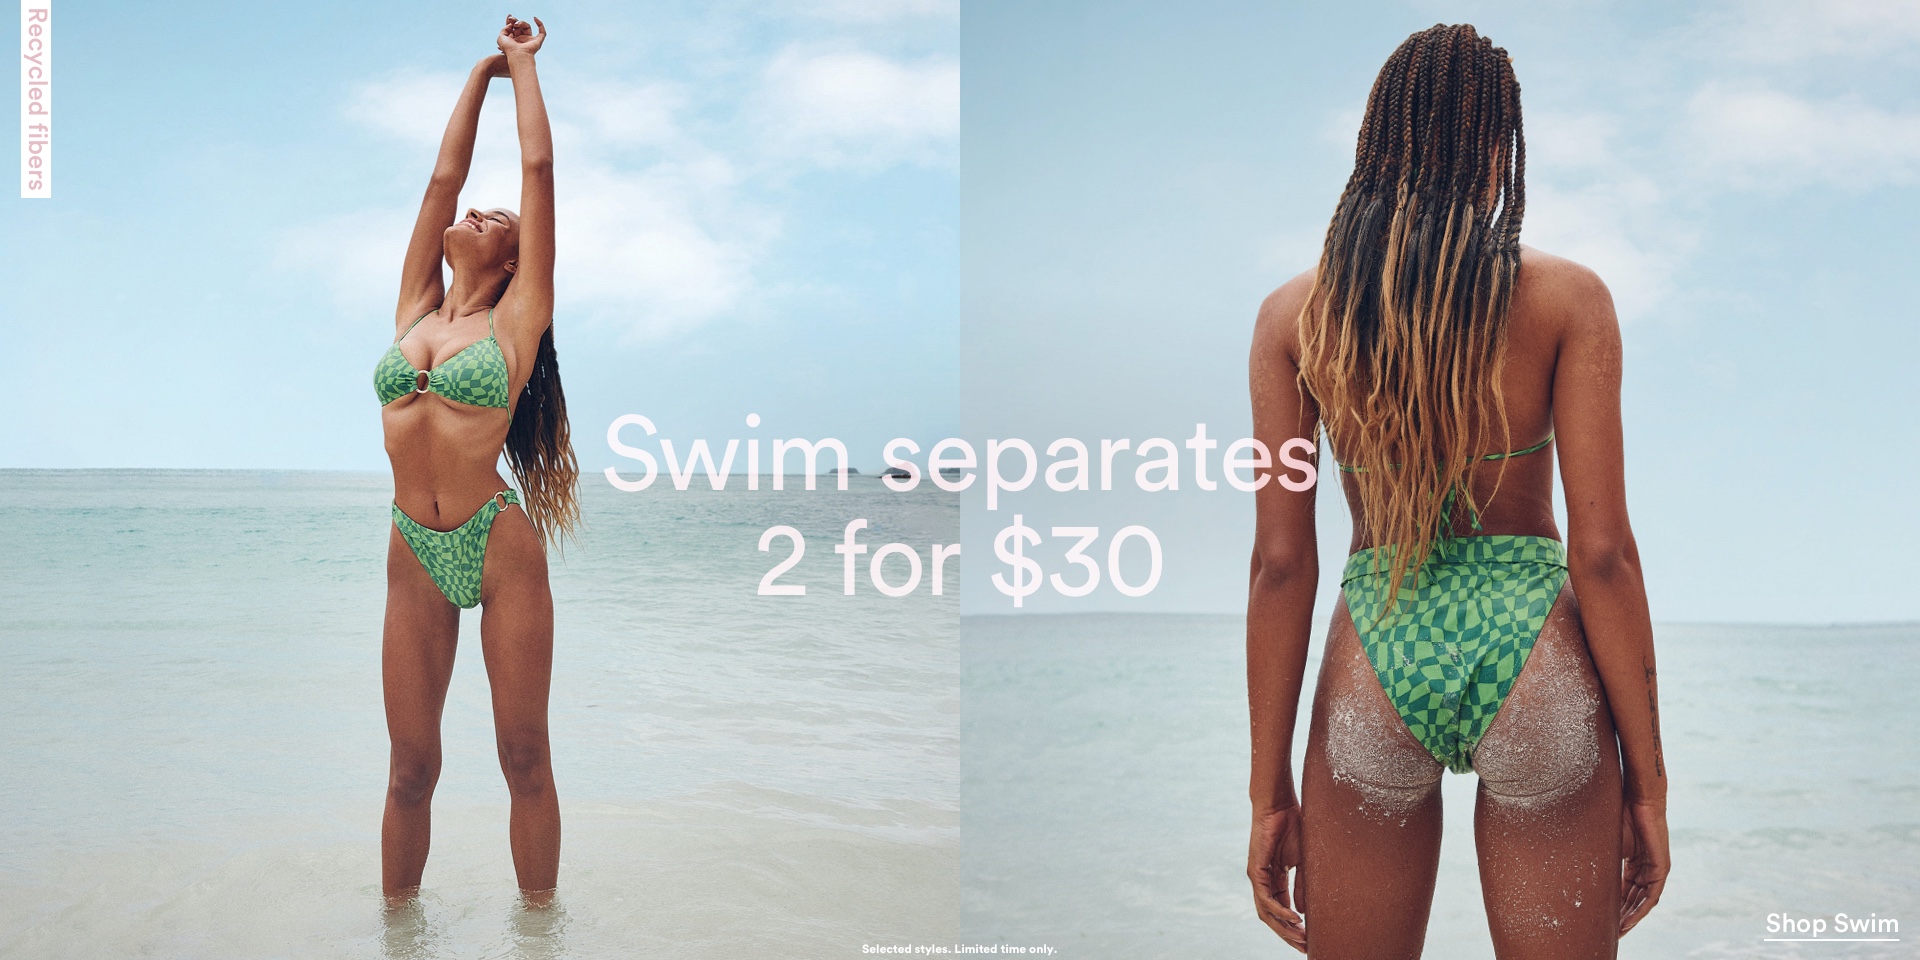 Swim separates 2 for $30.